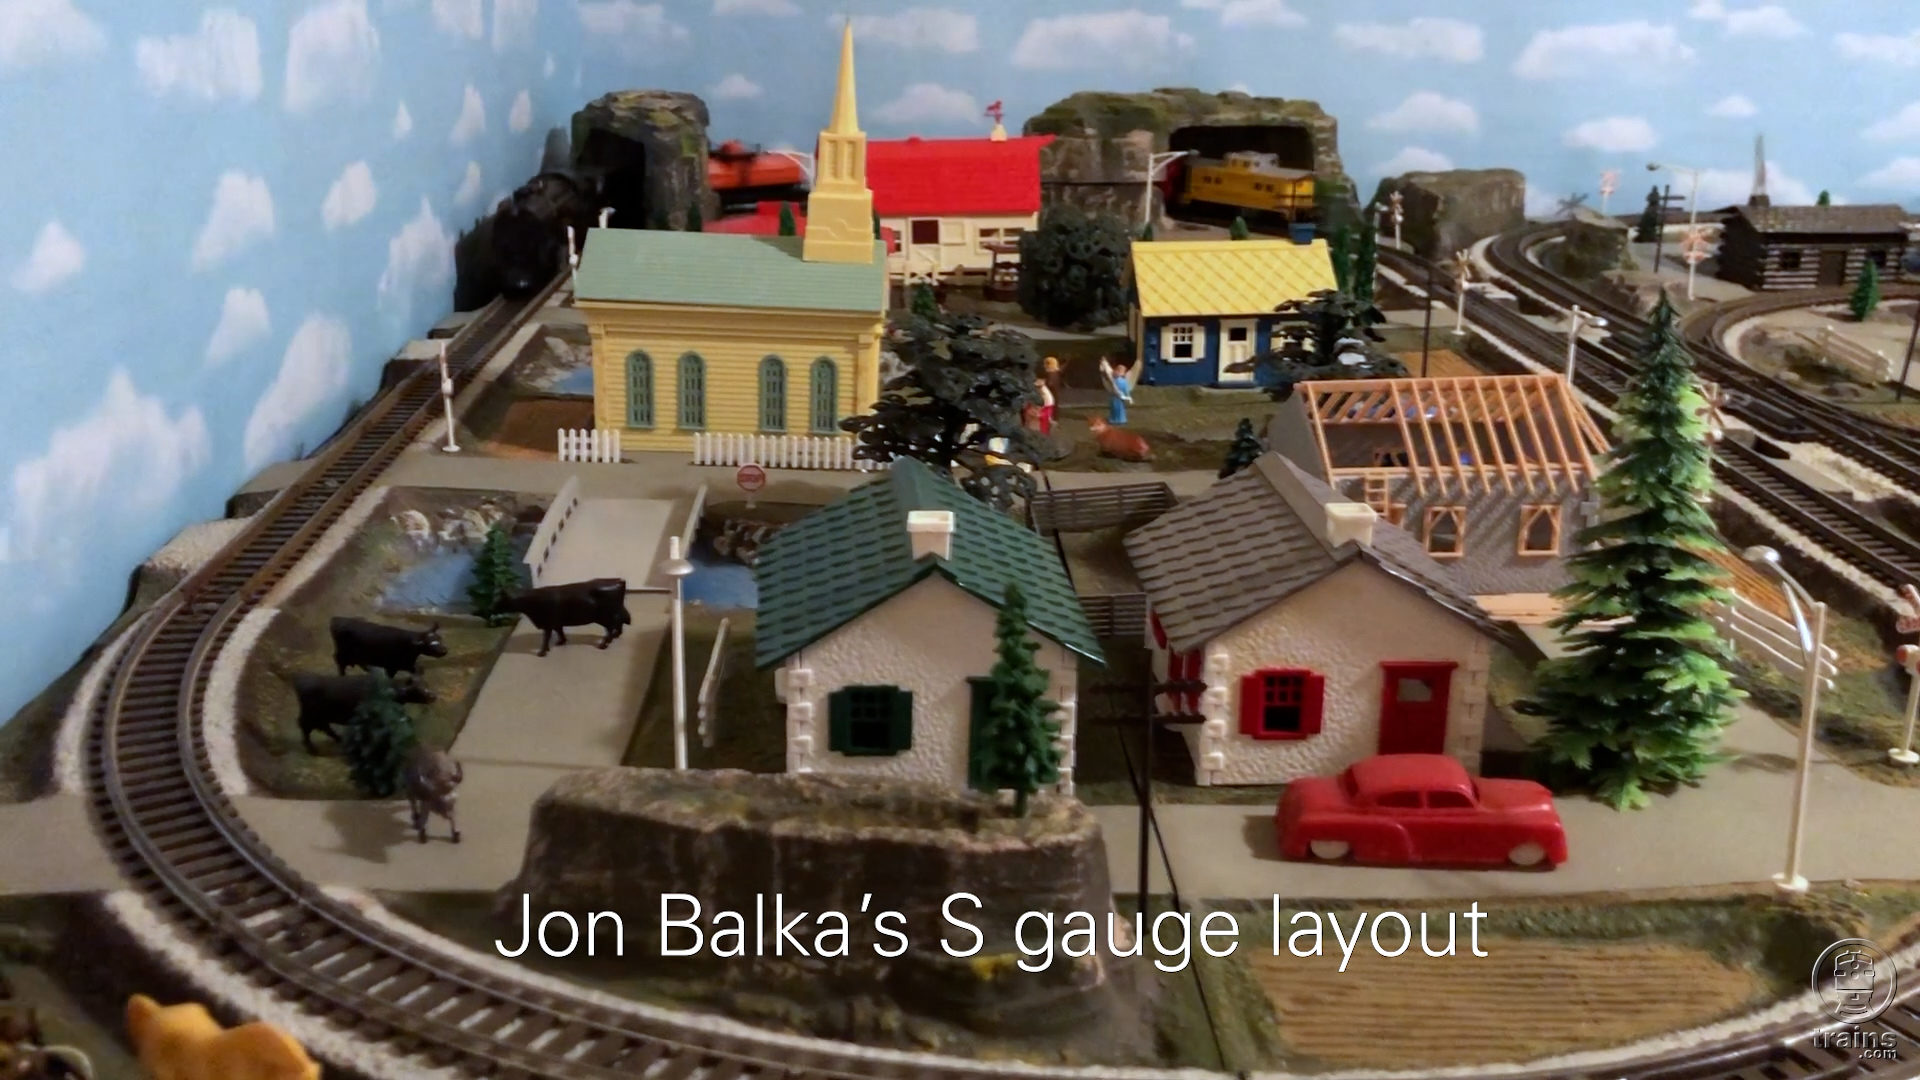 Jon Balka’s S gauge layout